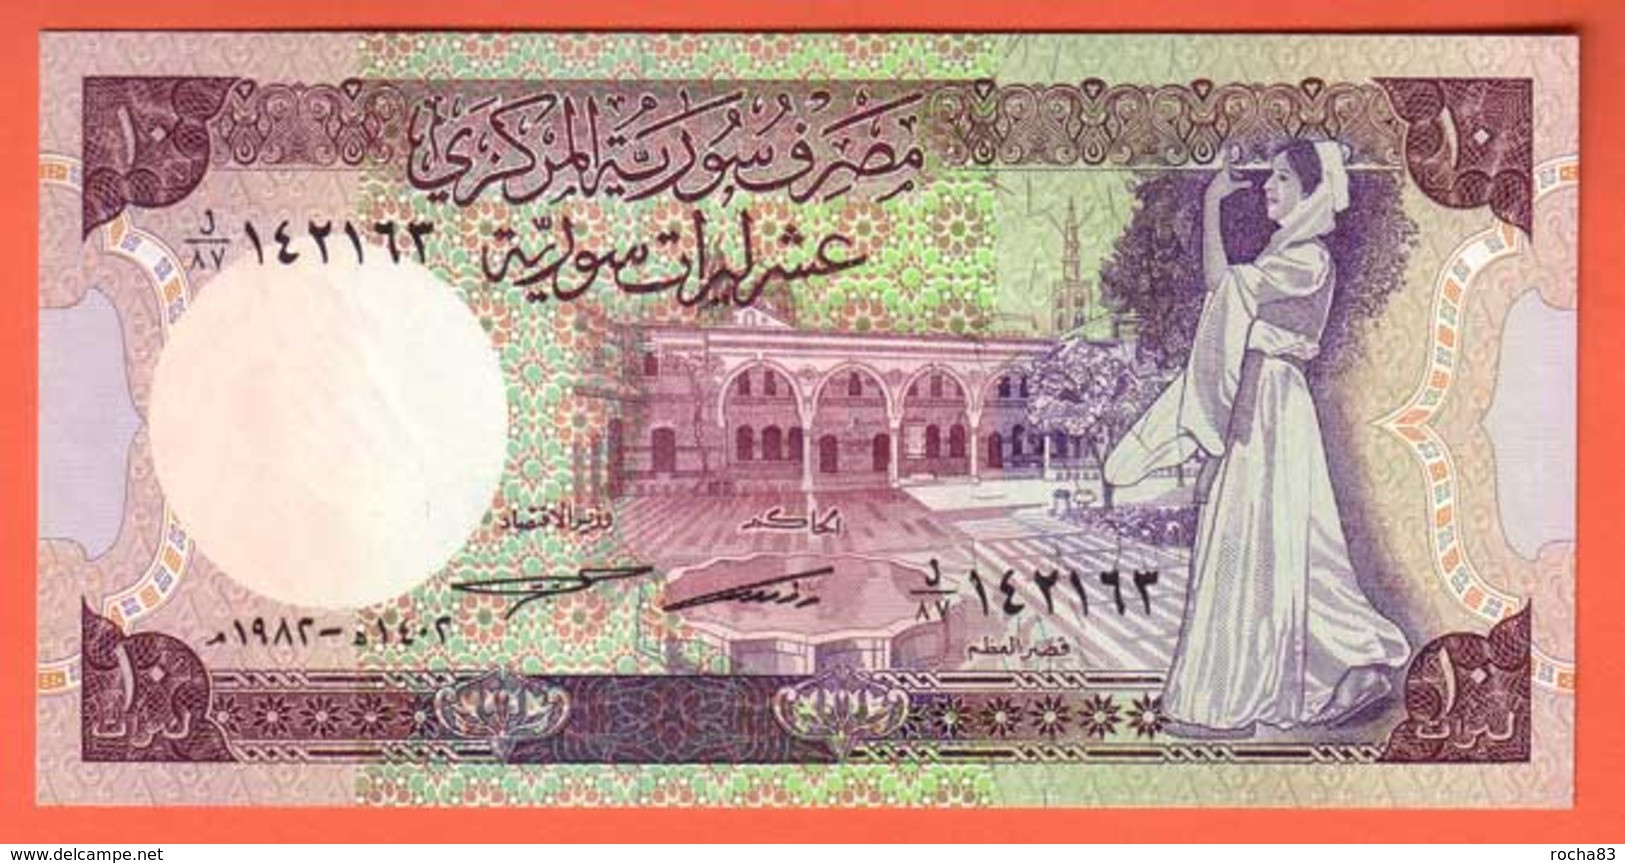 SYRIE  Billet 10 Pounds 1991  Pick 101e  NEUF - Syrië